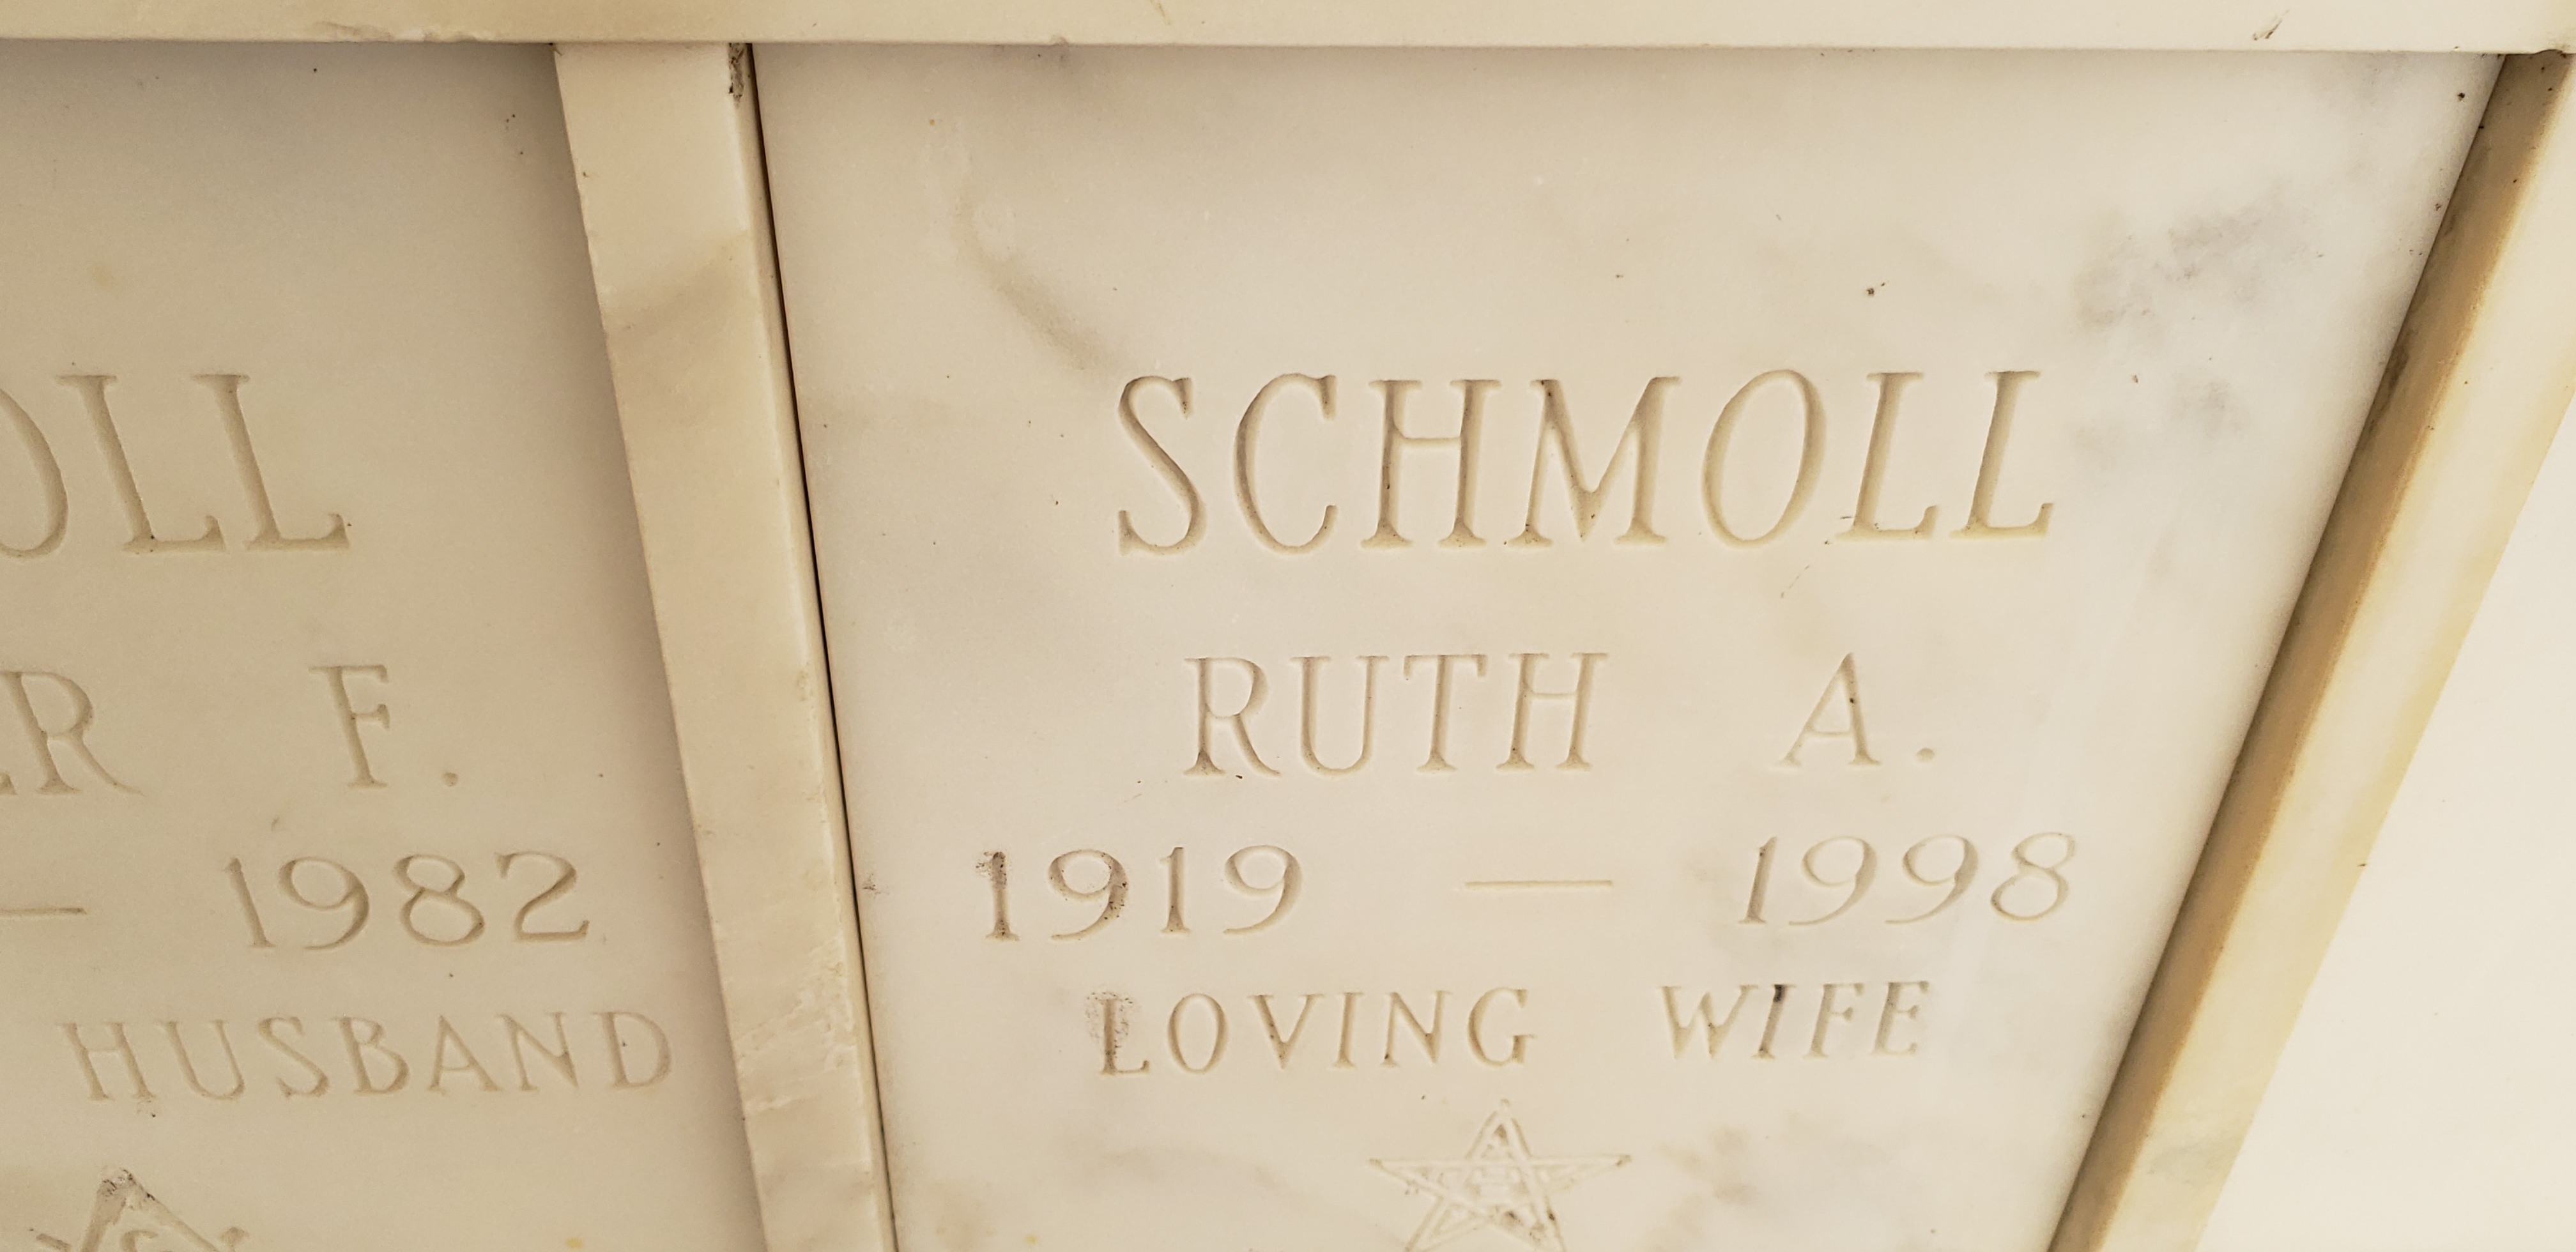 Ruth A Schmoll